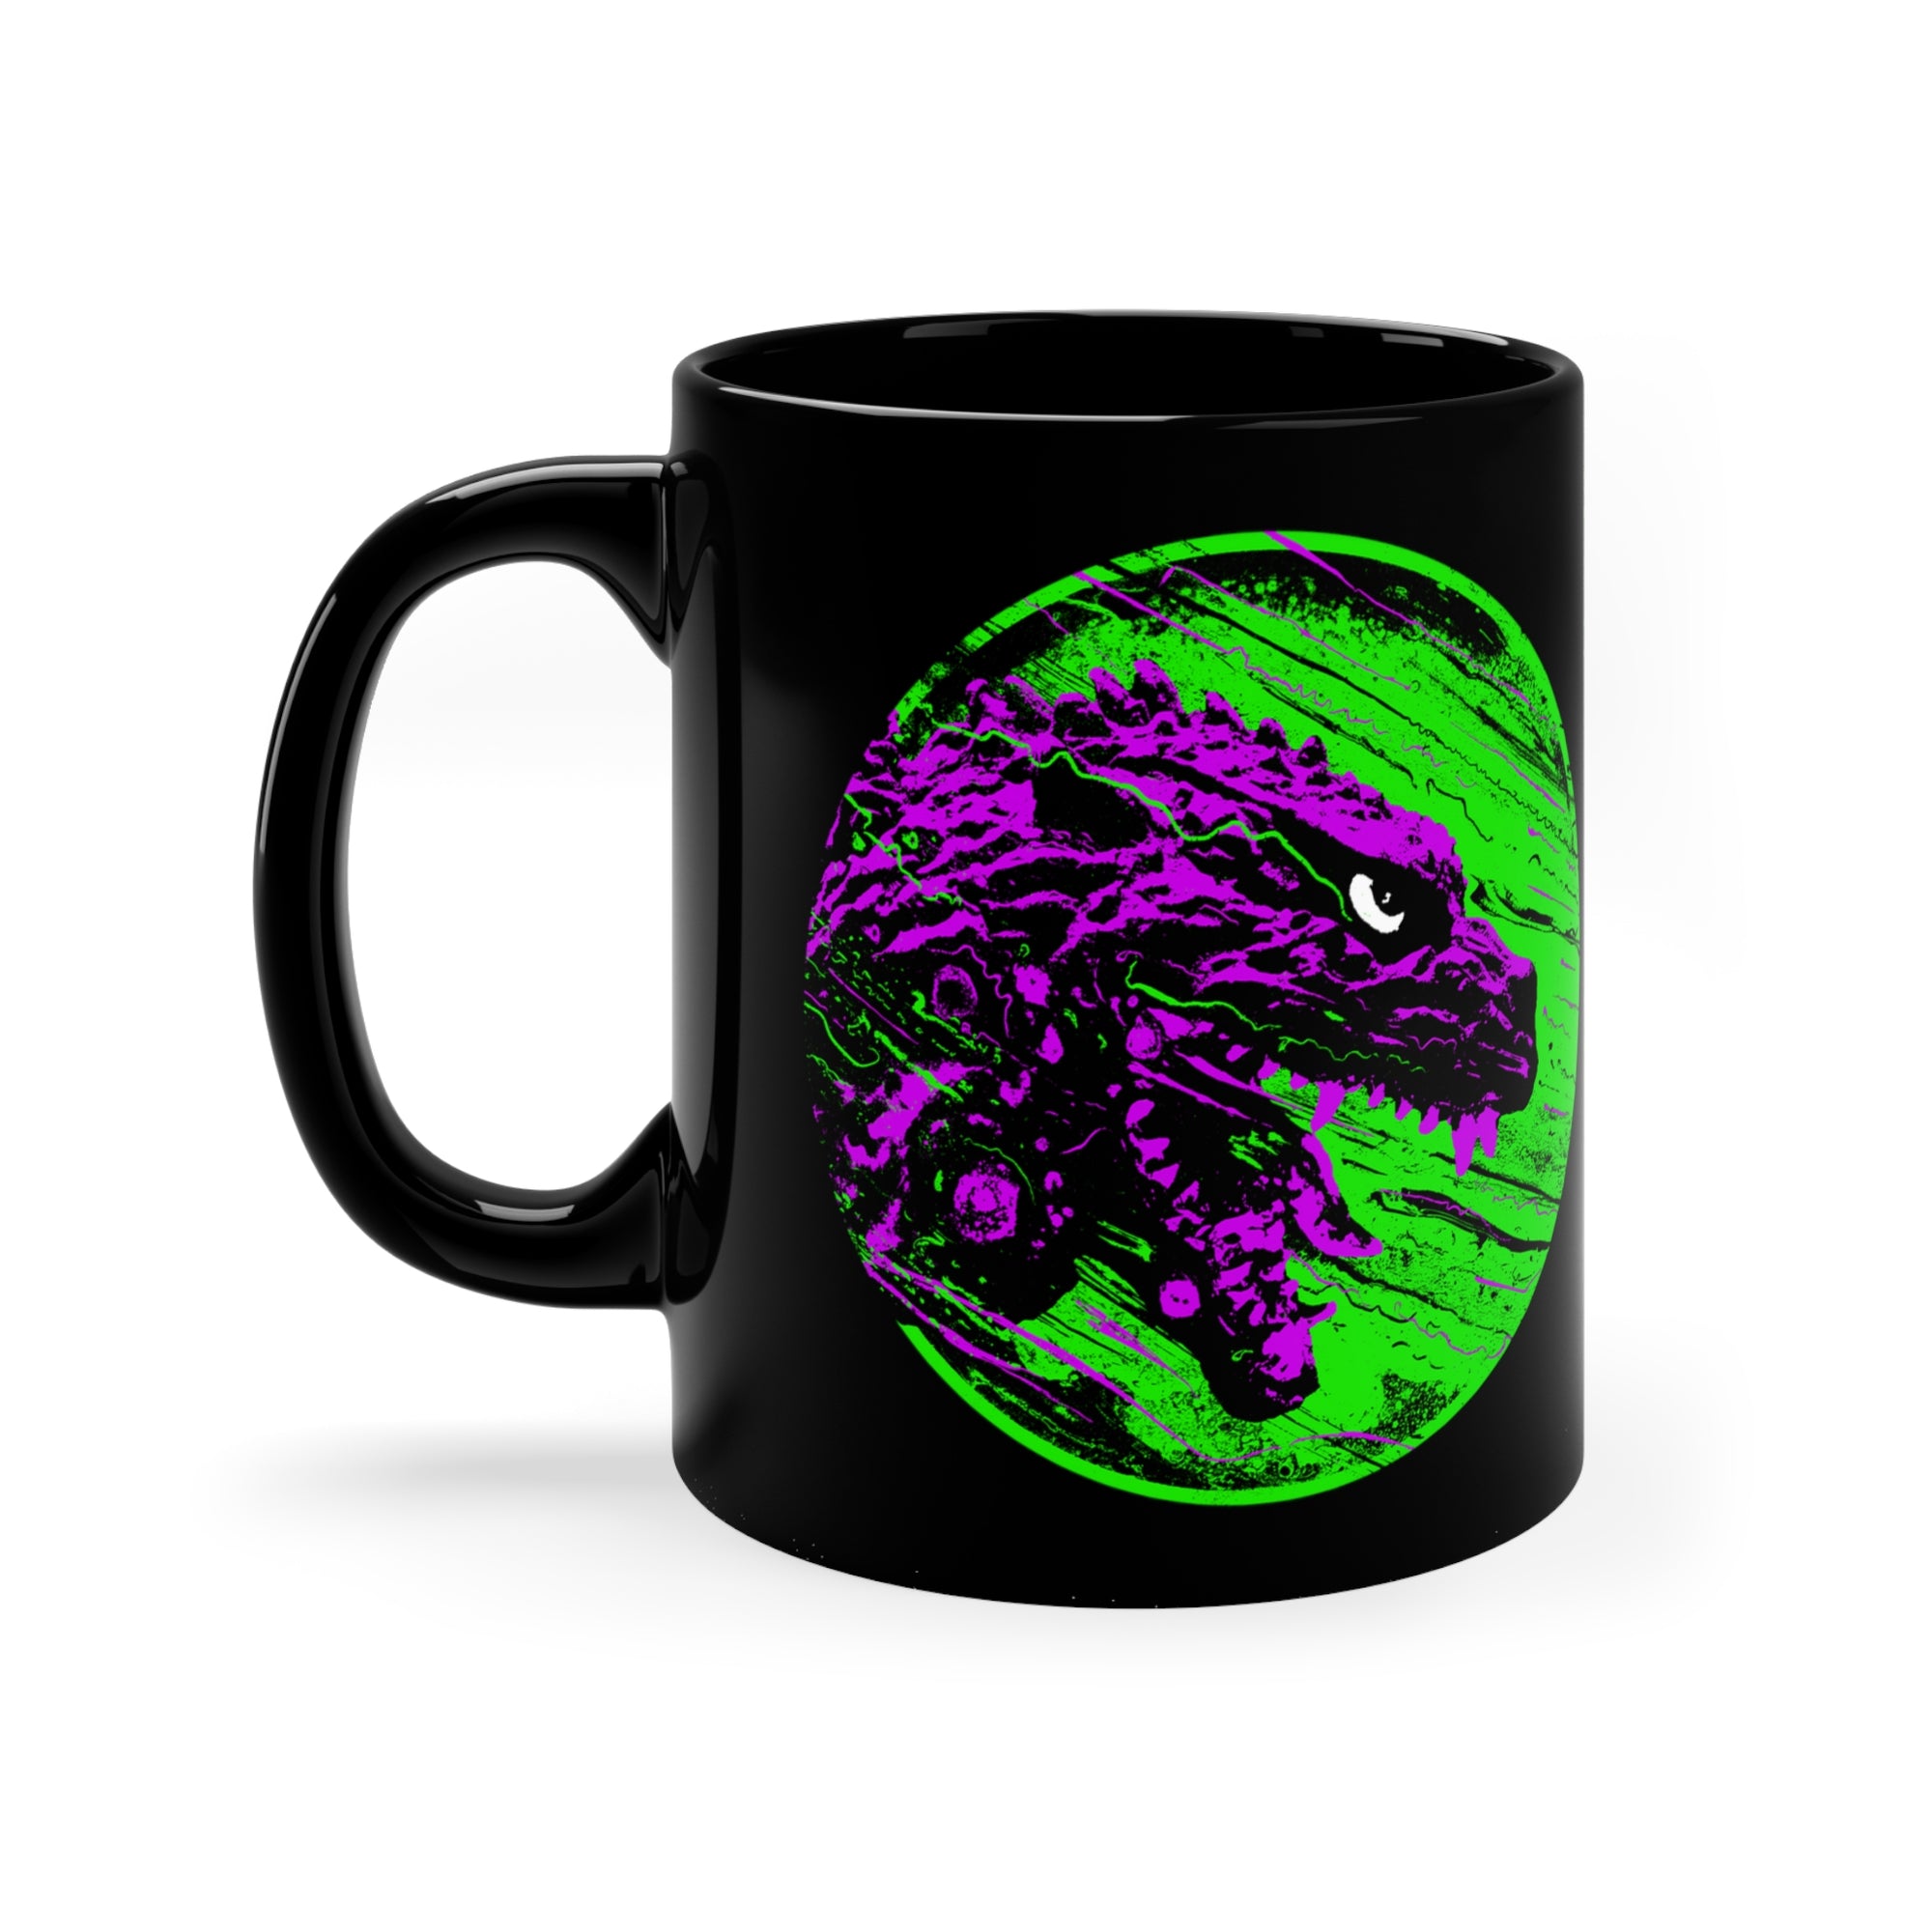 J. Bannon "Destroyer Of Worlds: Pink & Green" 11oz Black Mug